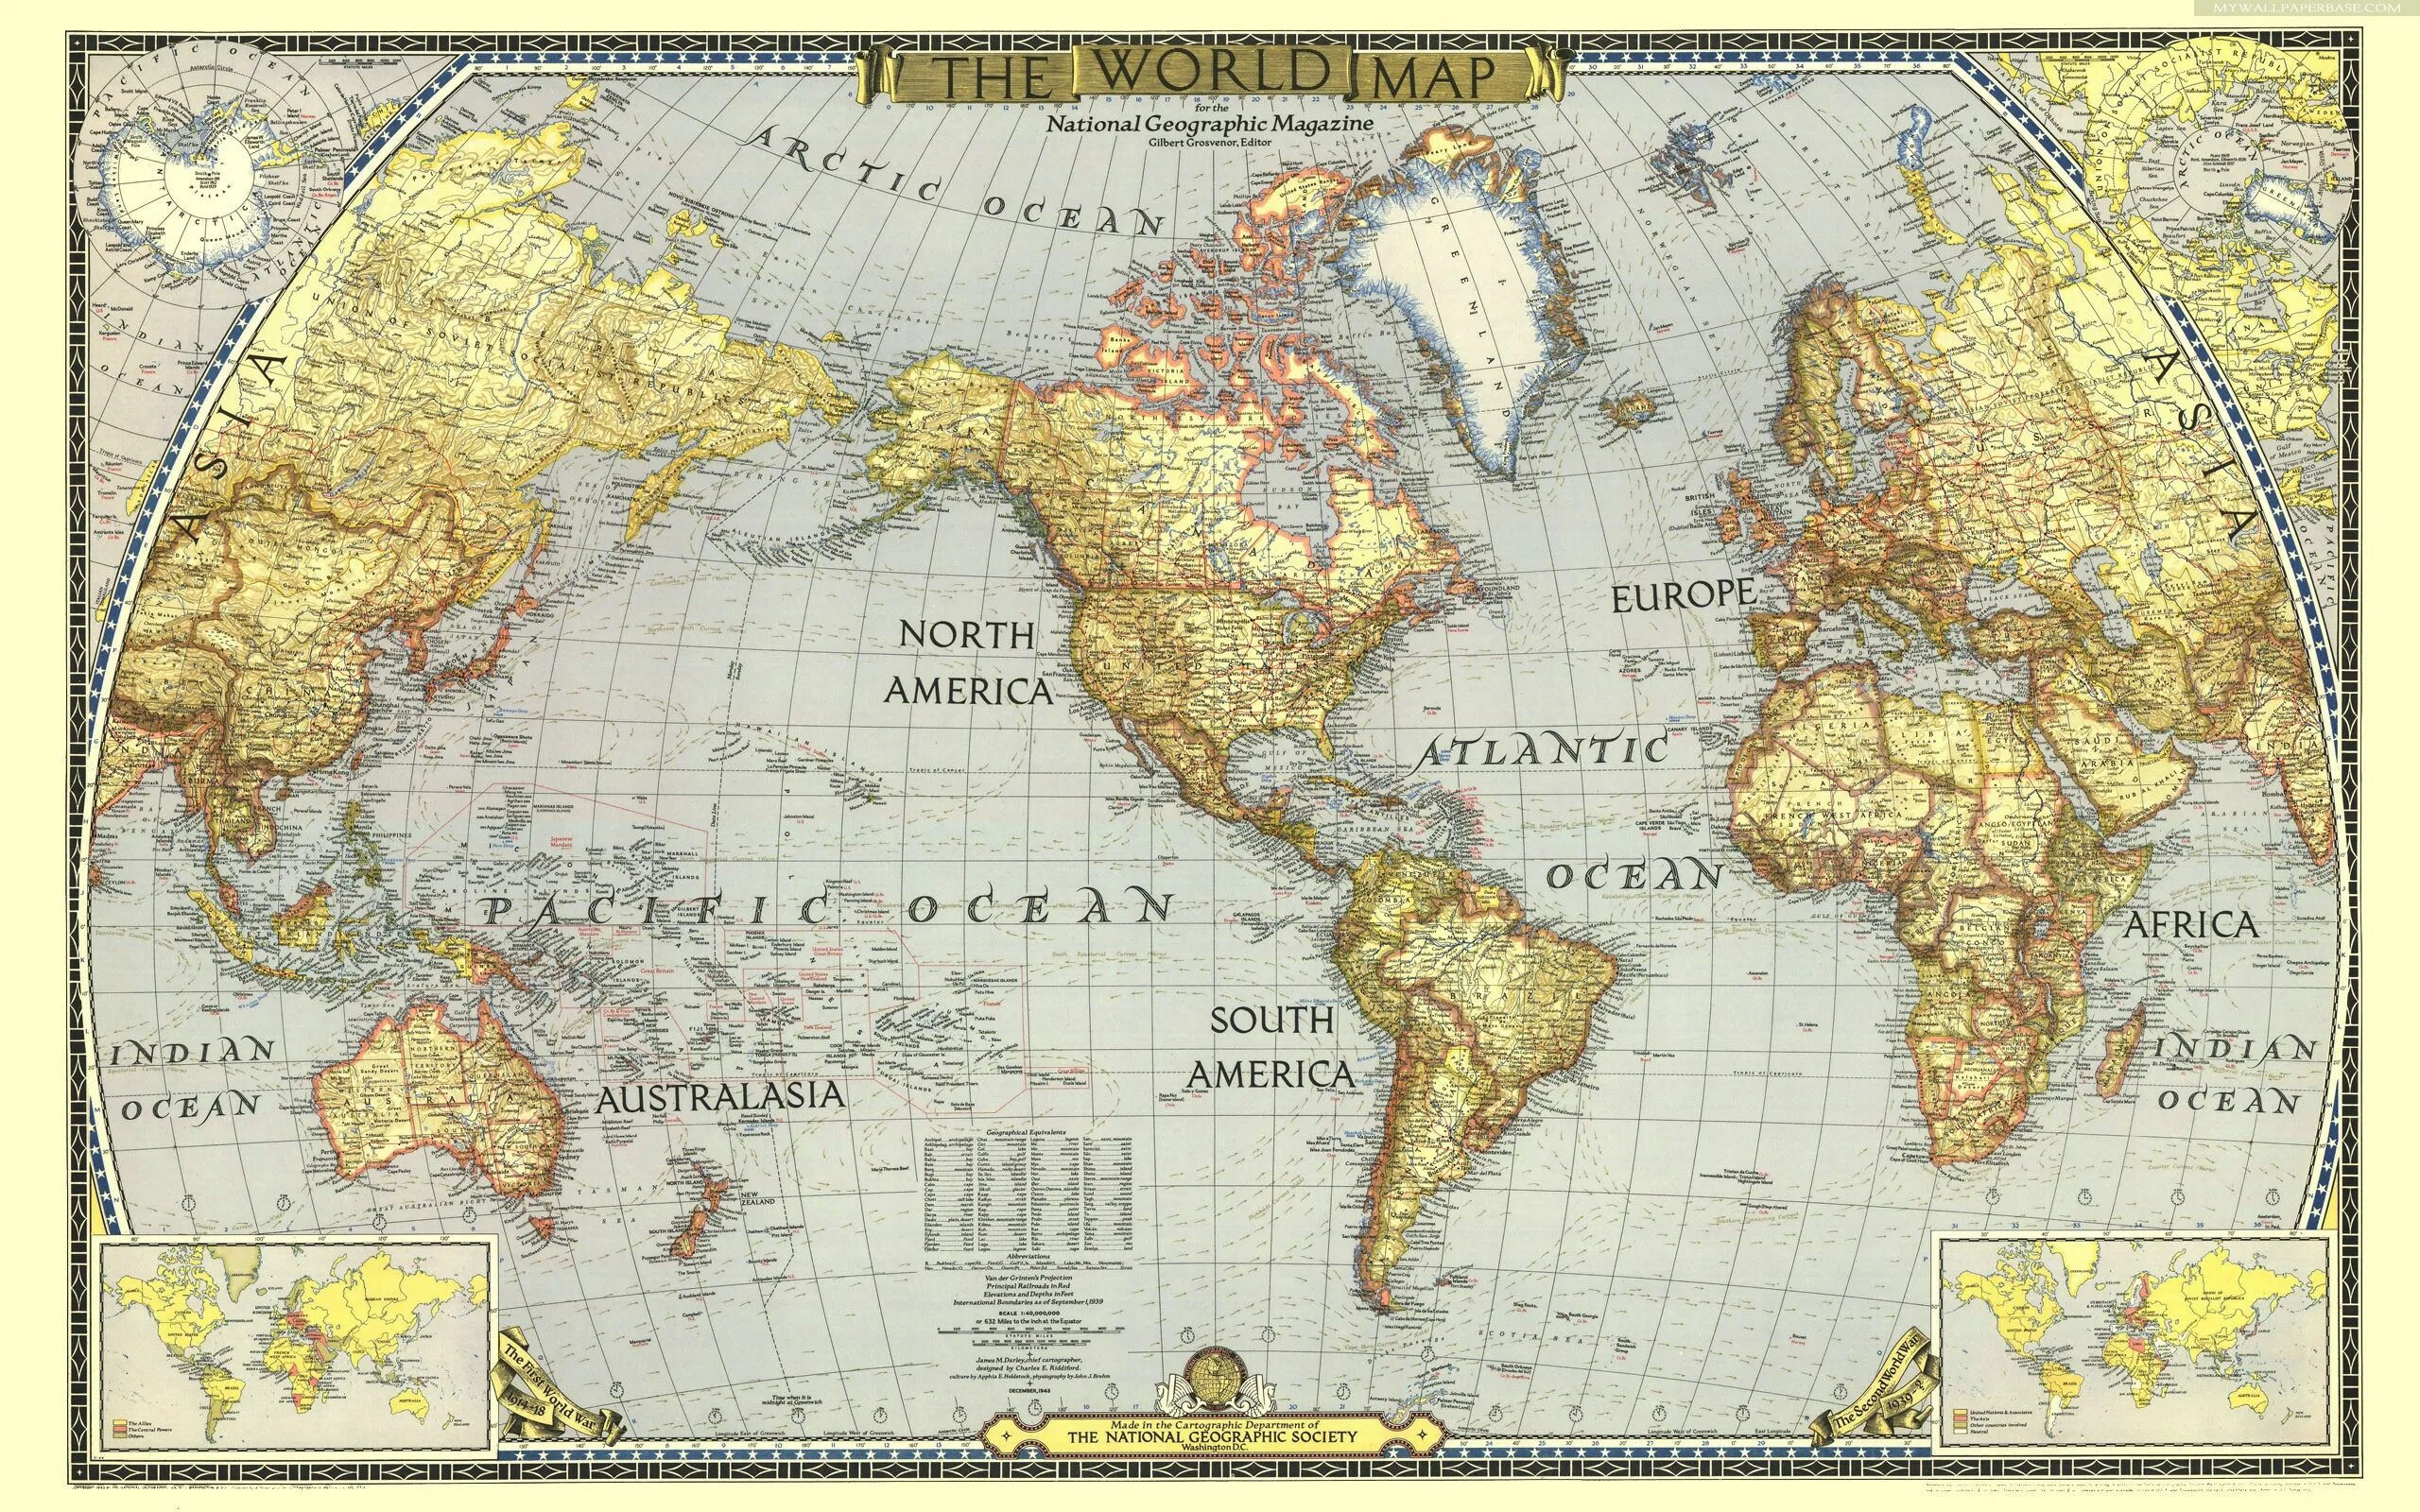 Географическая карта хорошего качества. Карта National Geographic the World.